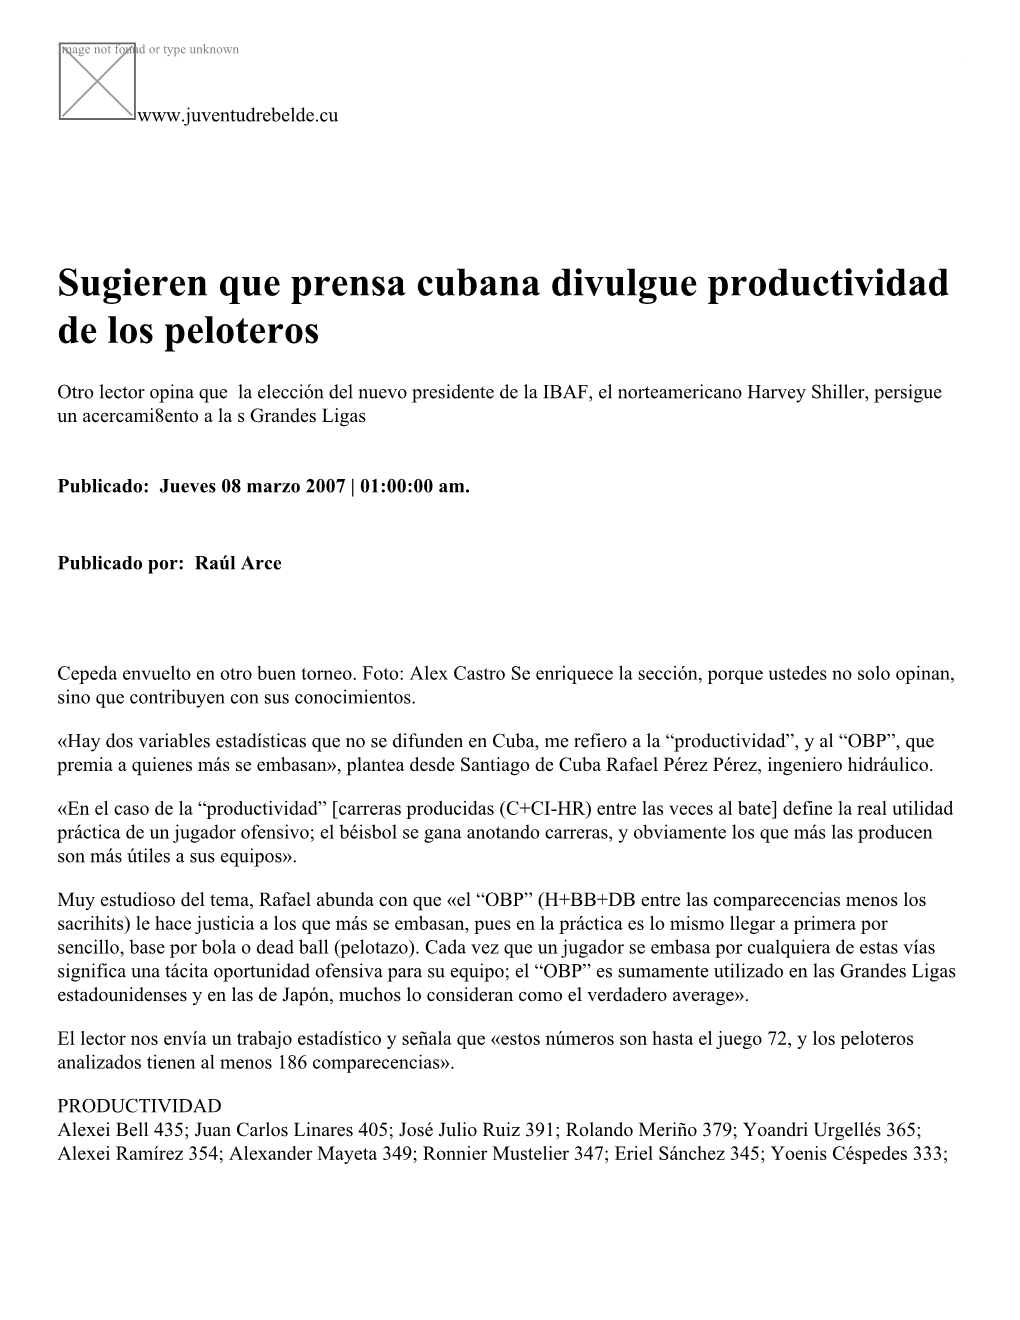 Sugieren Que Prensa Cubana Divulgue Productividad De Los Peloteros